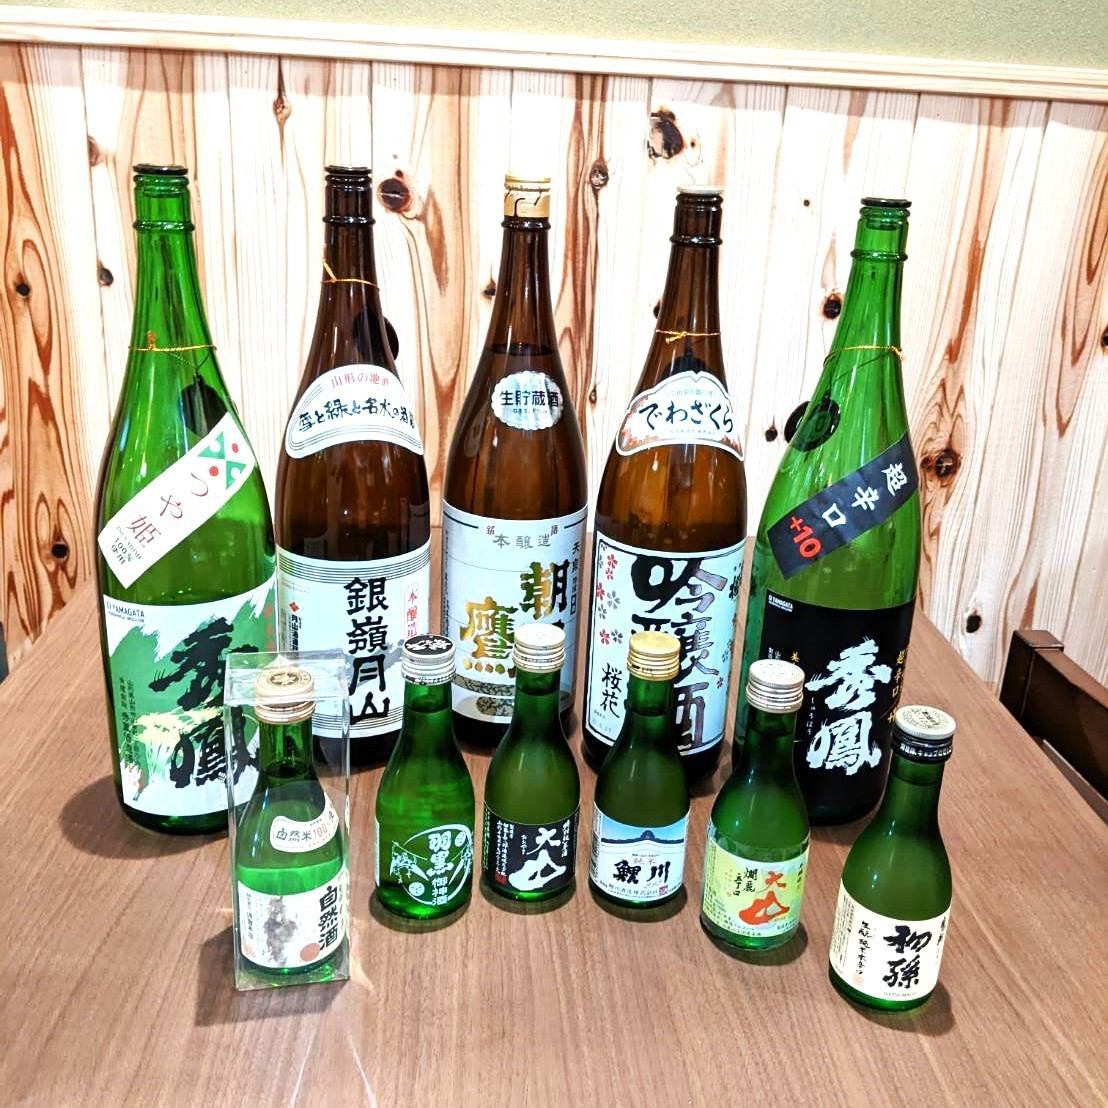 这里有来自日本各地的各种当地酒！如果您有兴趣，请联系店长。